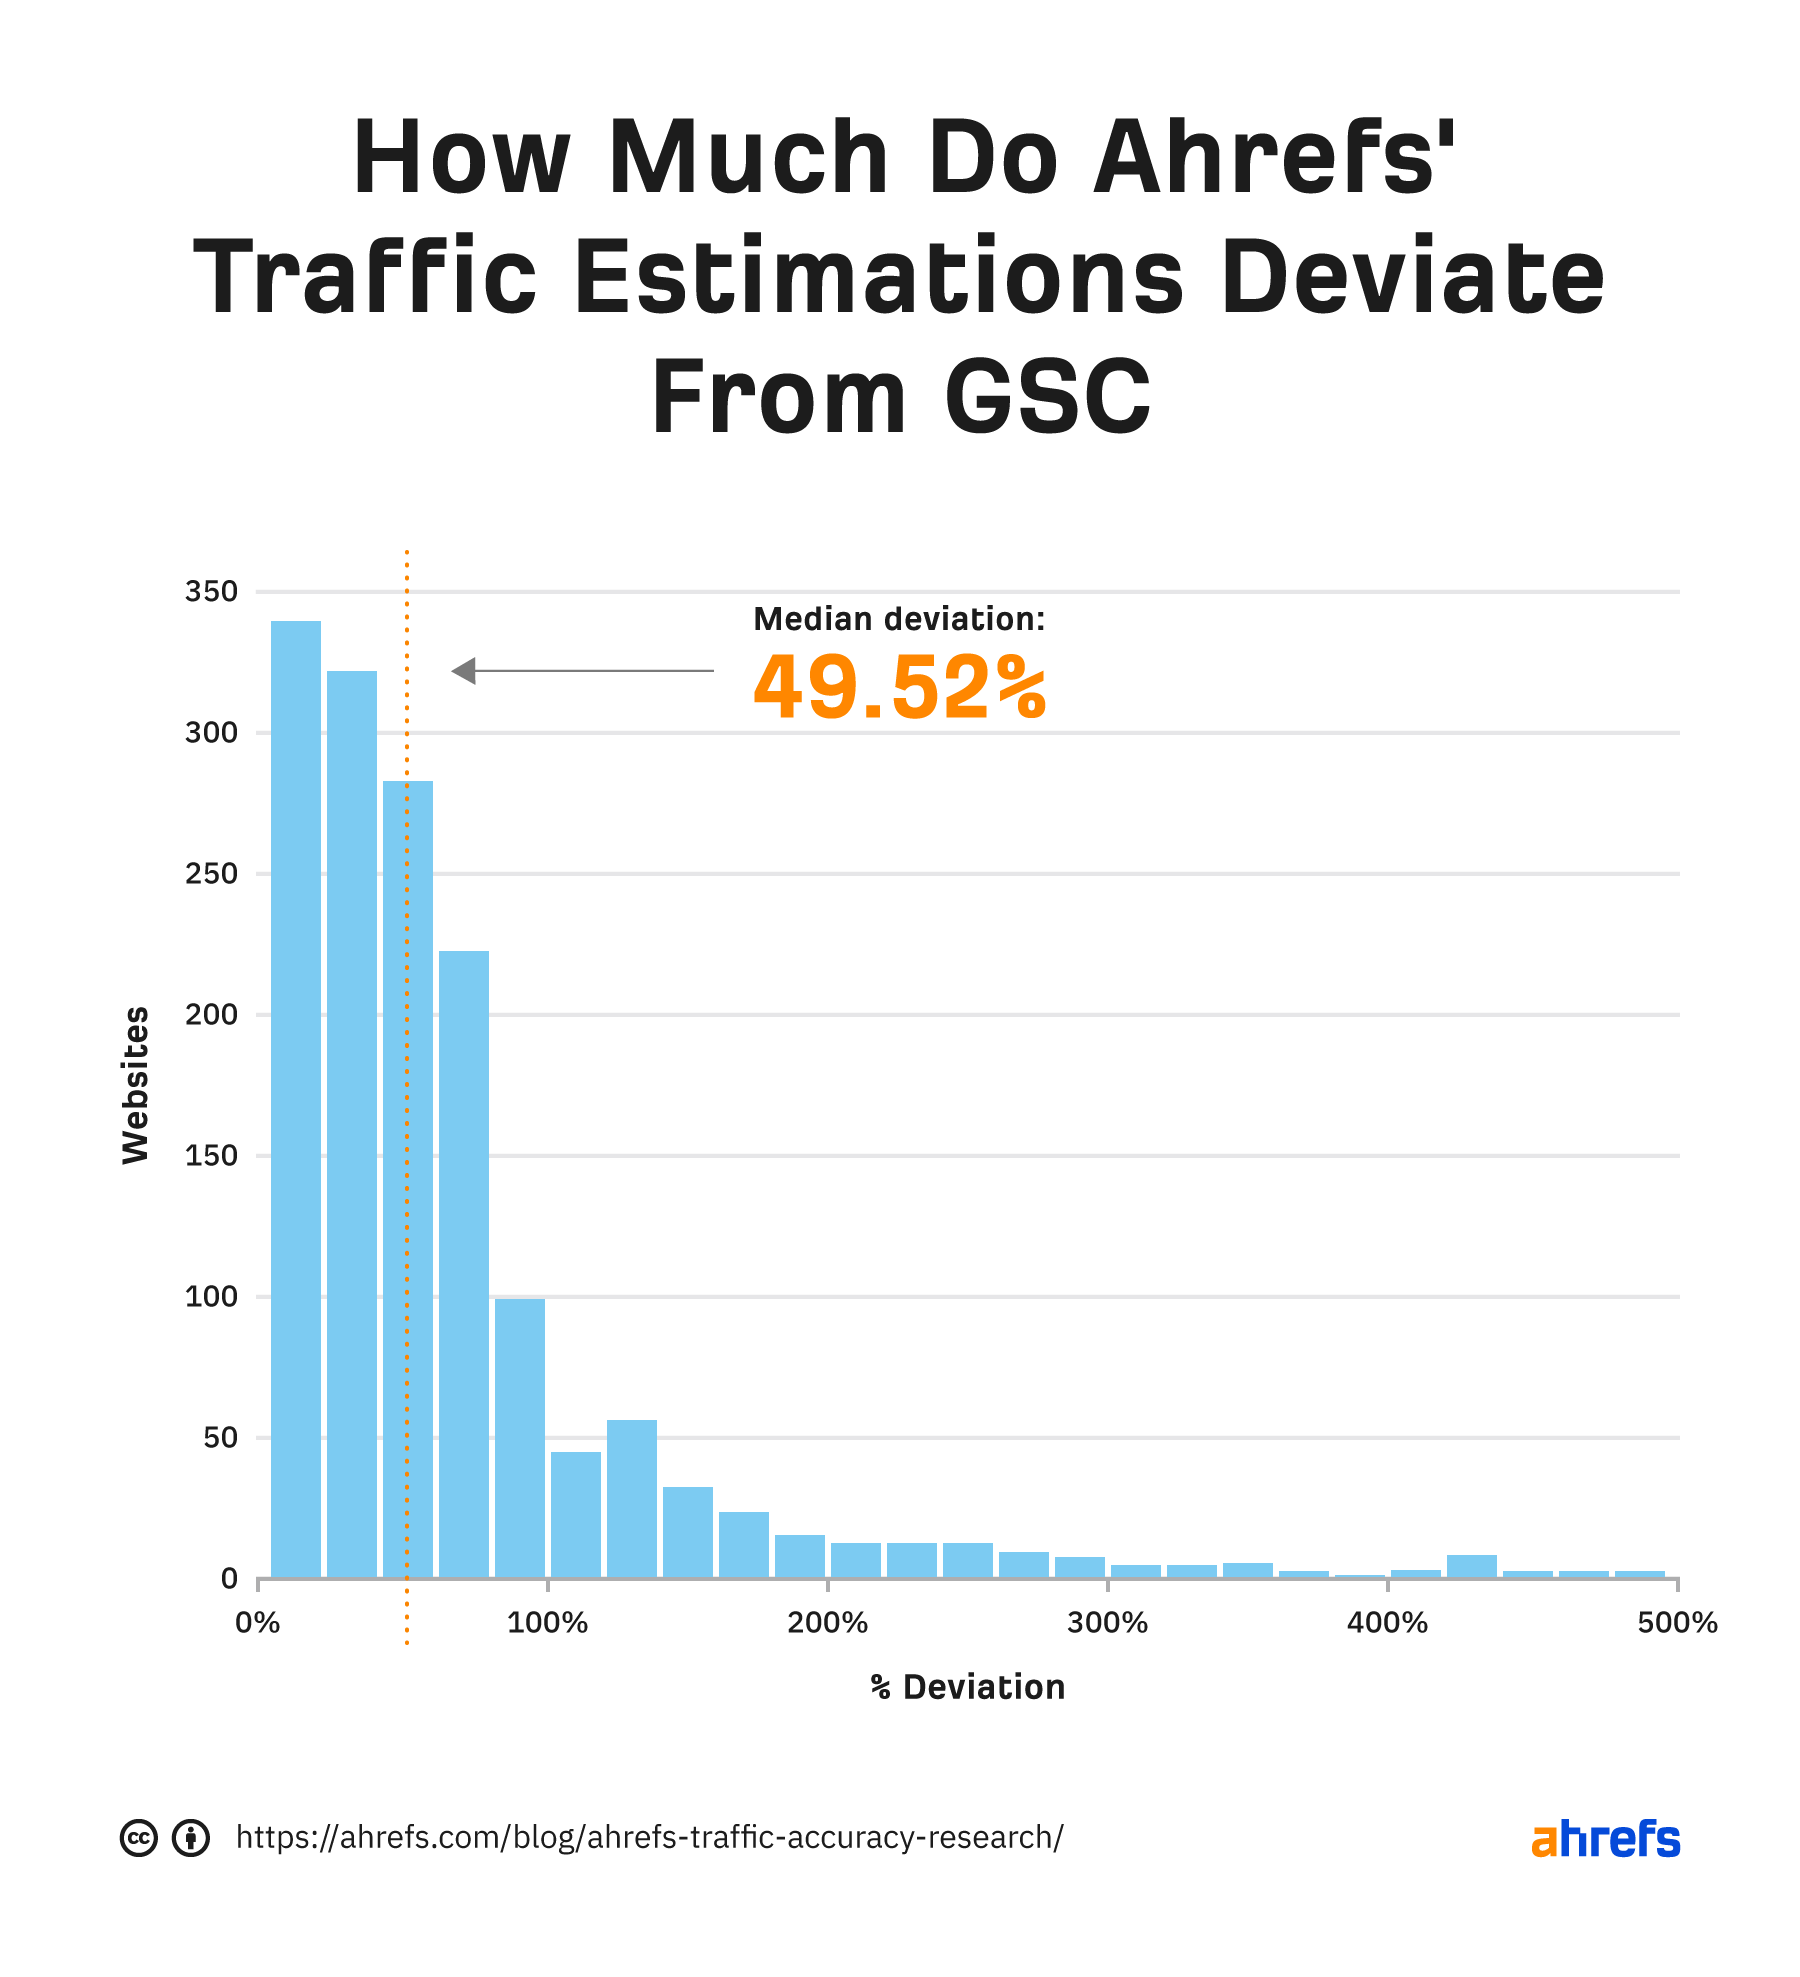 انحراف میانه بین تخمین ترافیک Ahrefs و GSC 49.52٪ است.